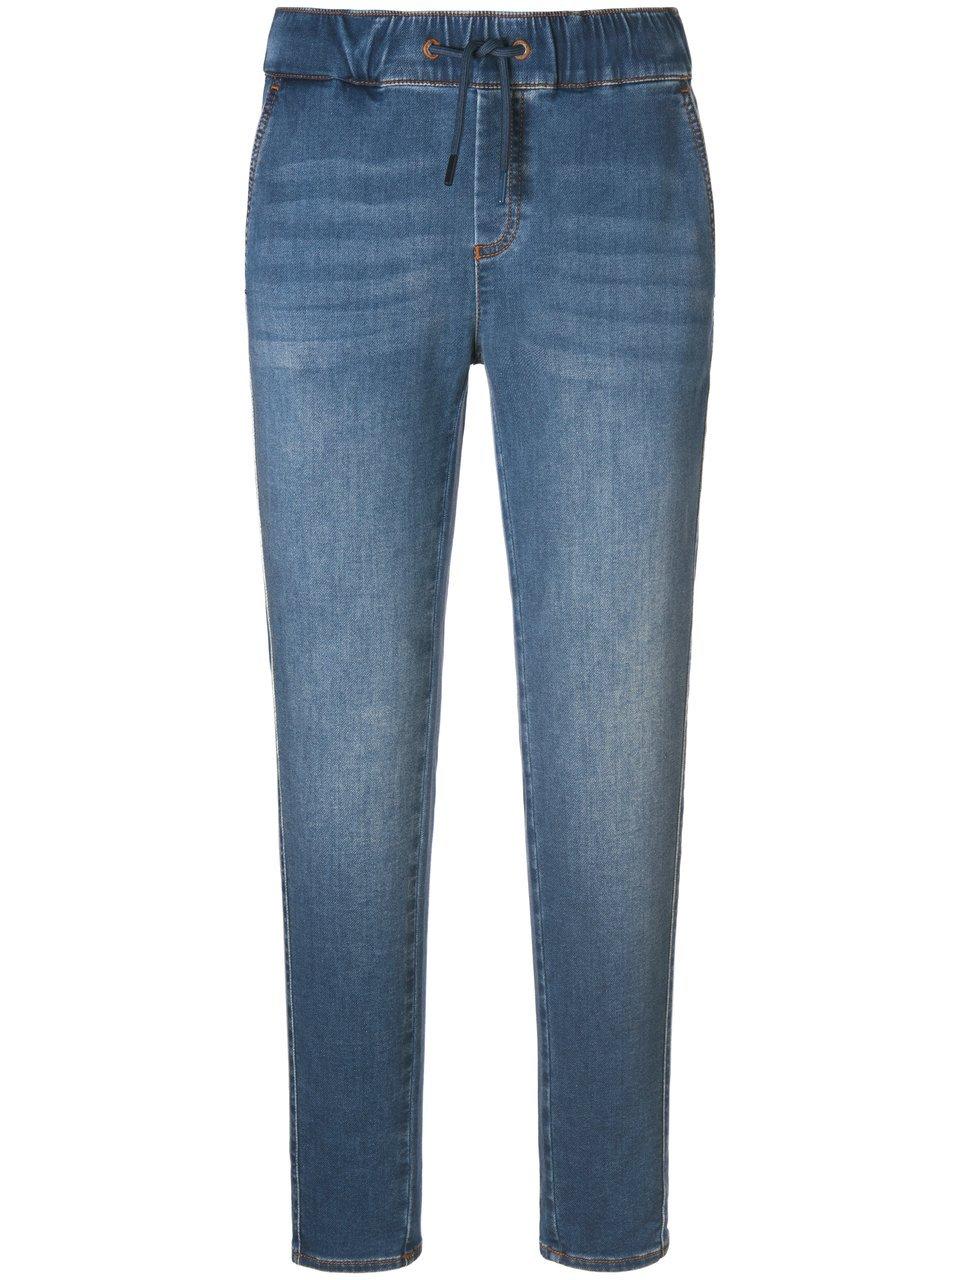 Enkellange jeans in jogg-pant-stijl pasvorm Sylvia Van Peter Hahn denim